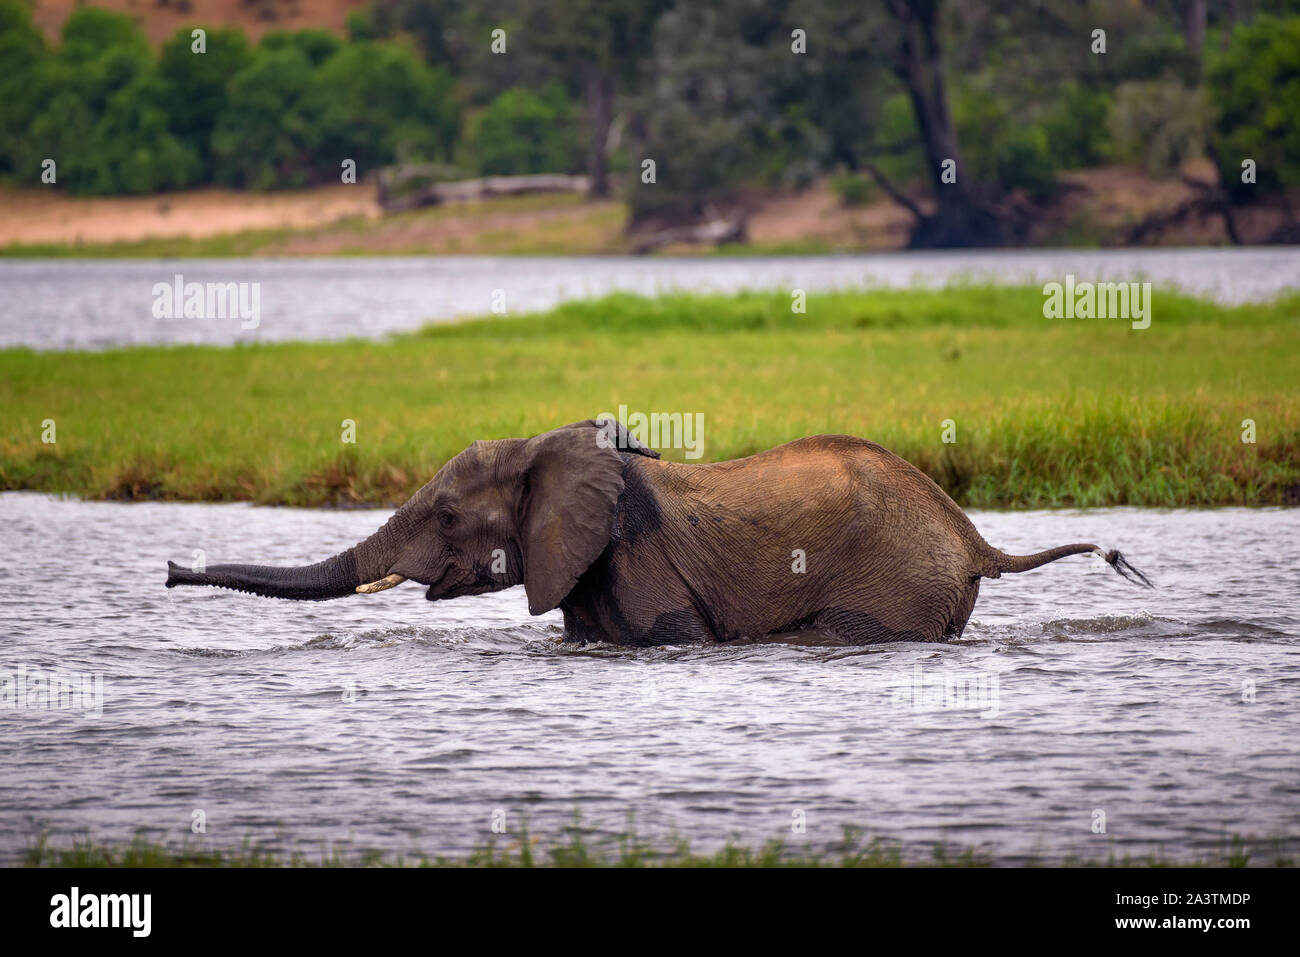 Elephant crossing the Chobe River in Chobe National Park, Botswana Stock Photo